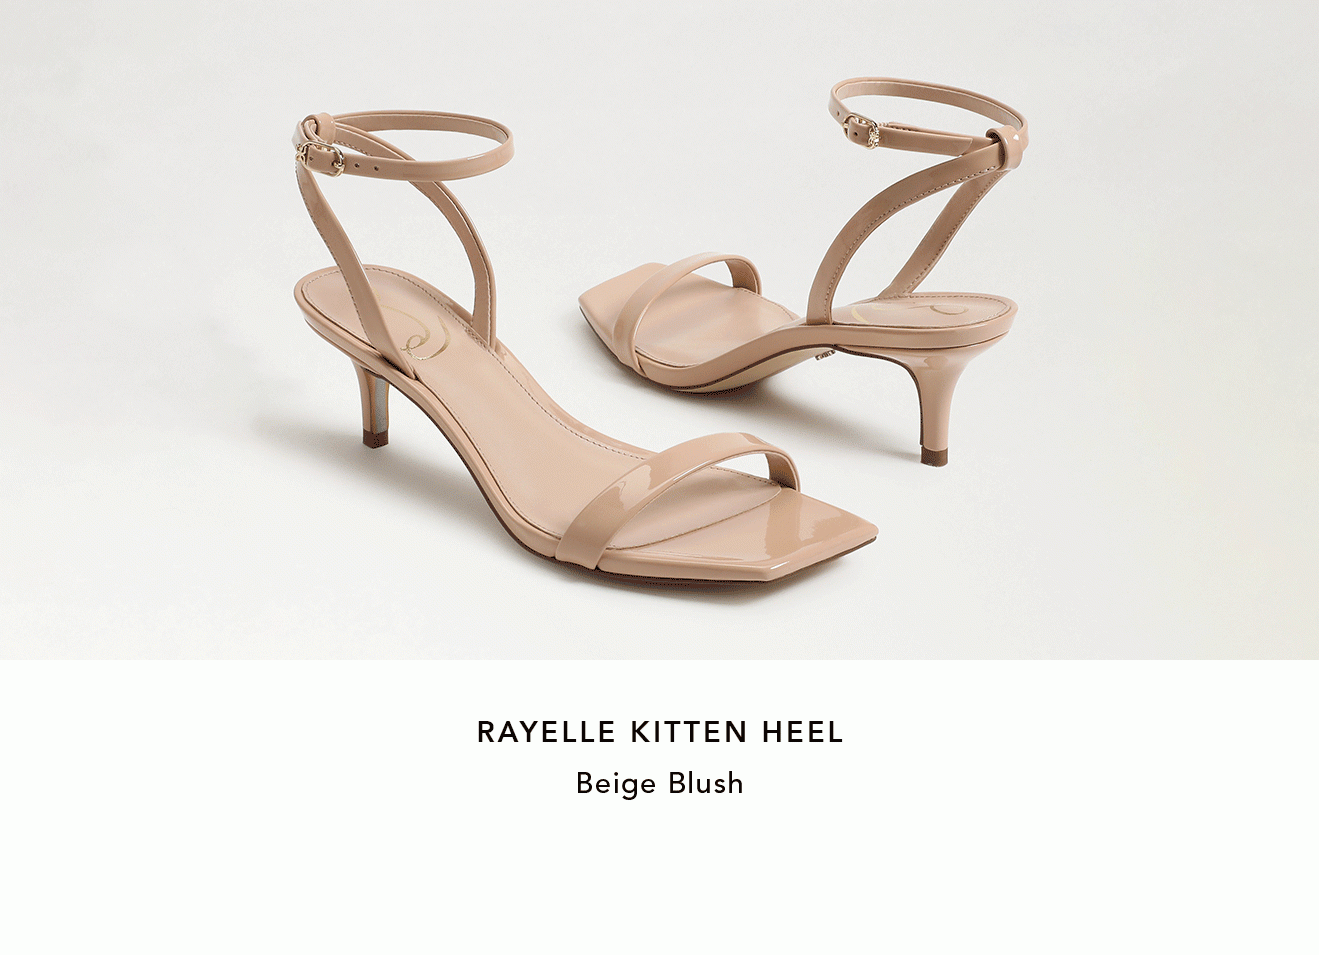 Rayelle Kitten Heel - Beige Blush